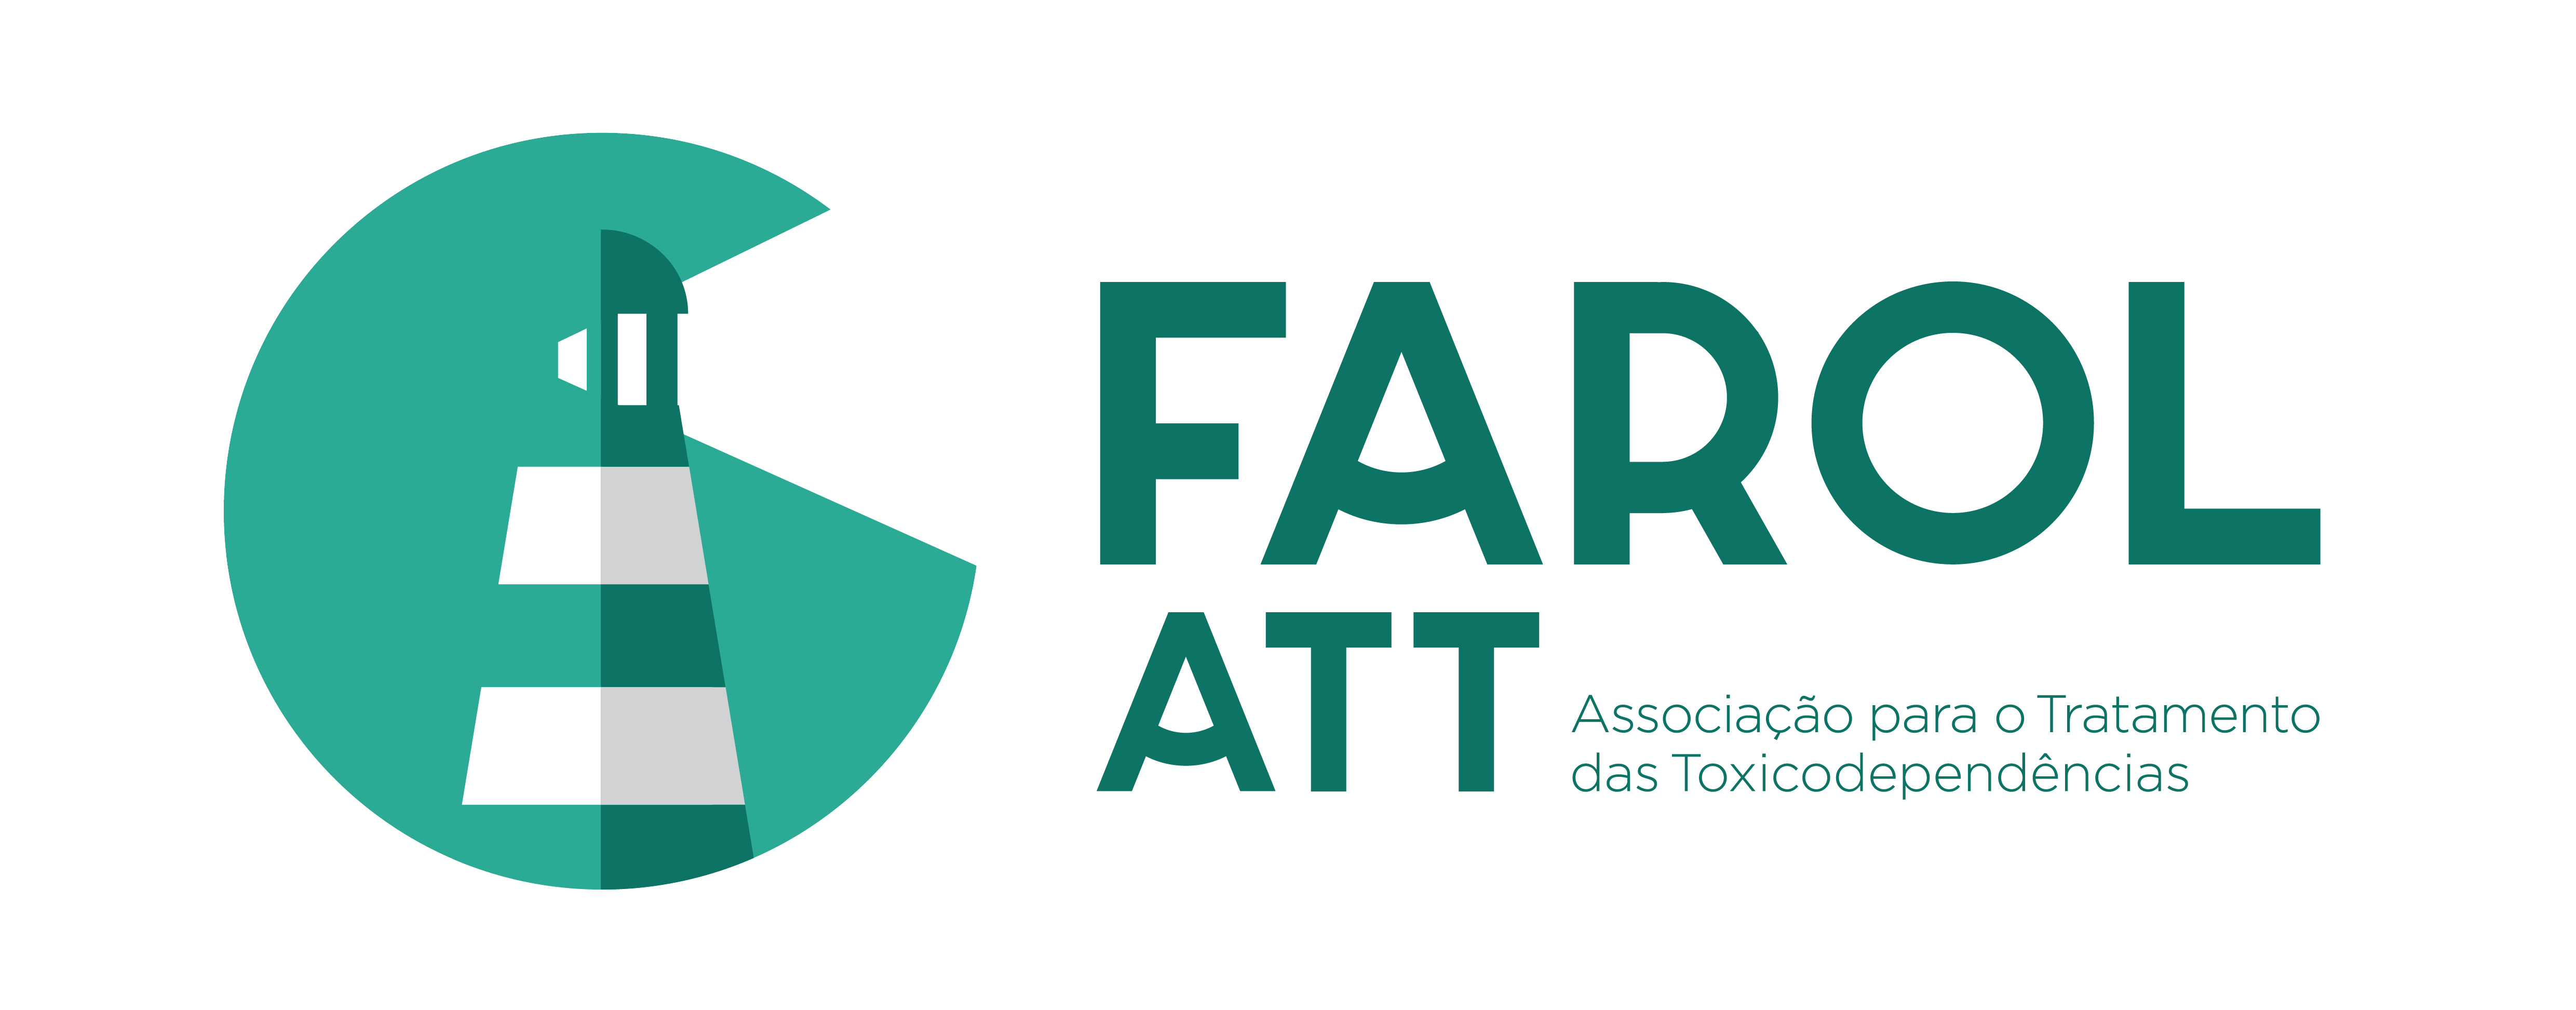 Farol ATT - Associação para o Tratamento das Toxicodependências 